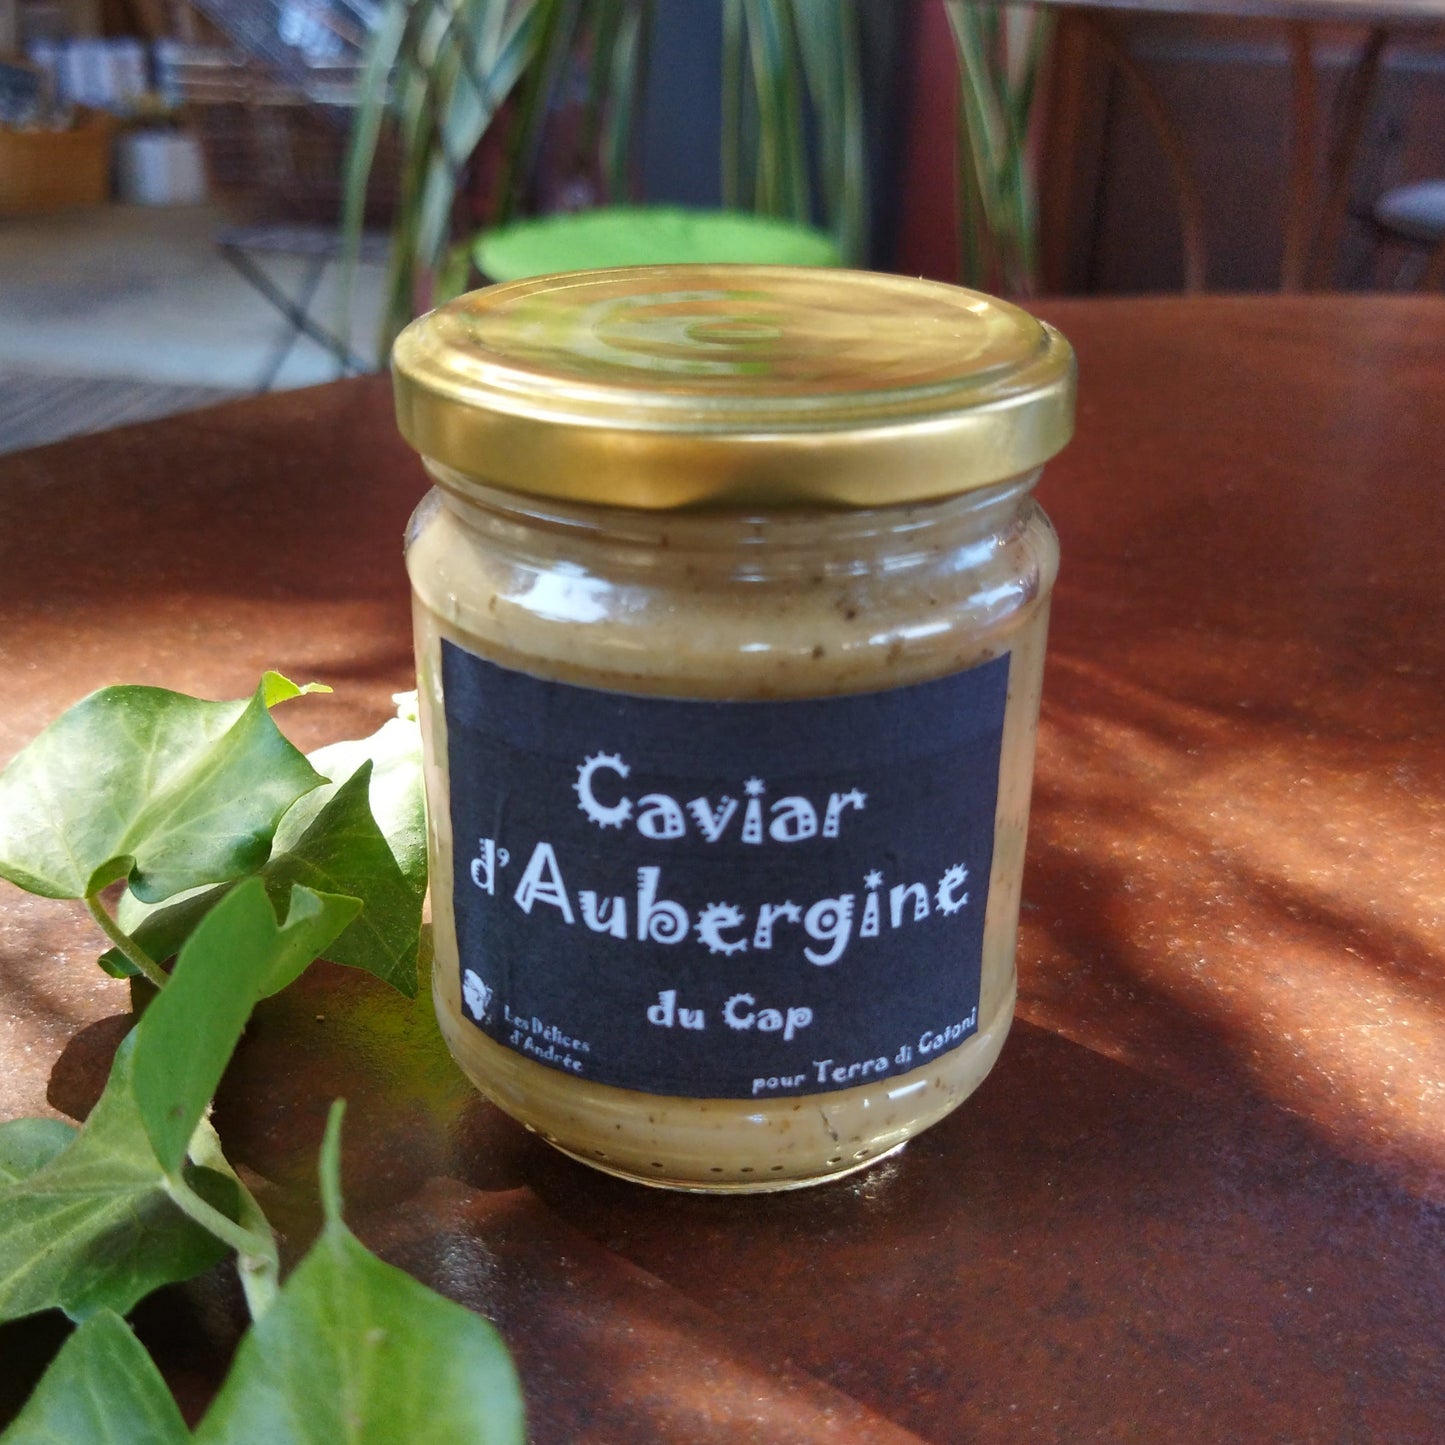 Eggplant caviar